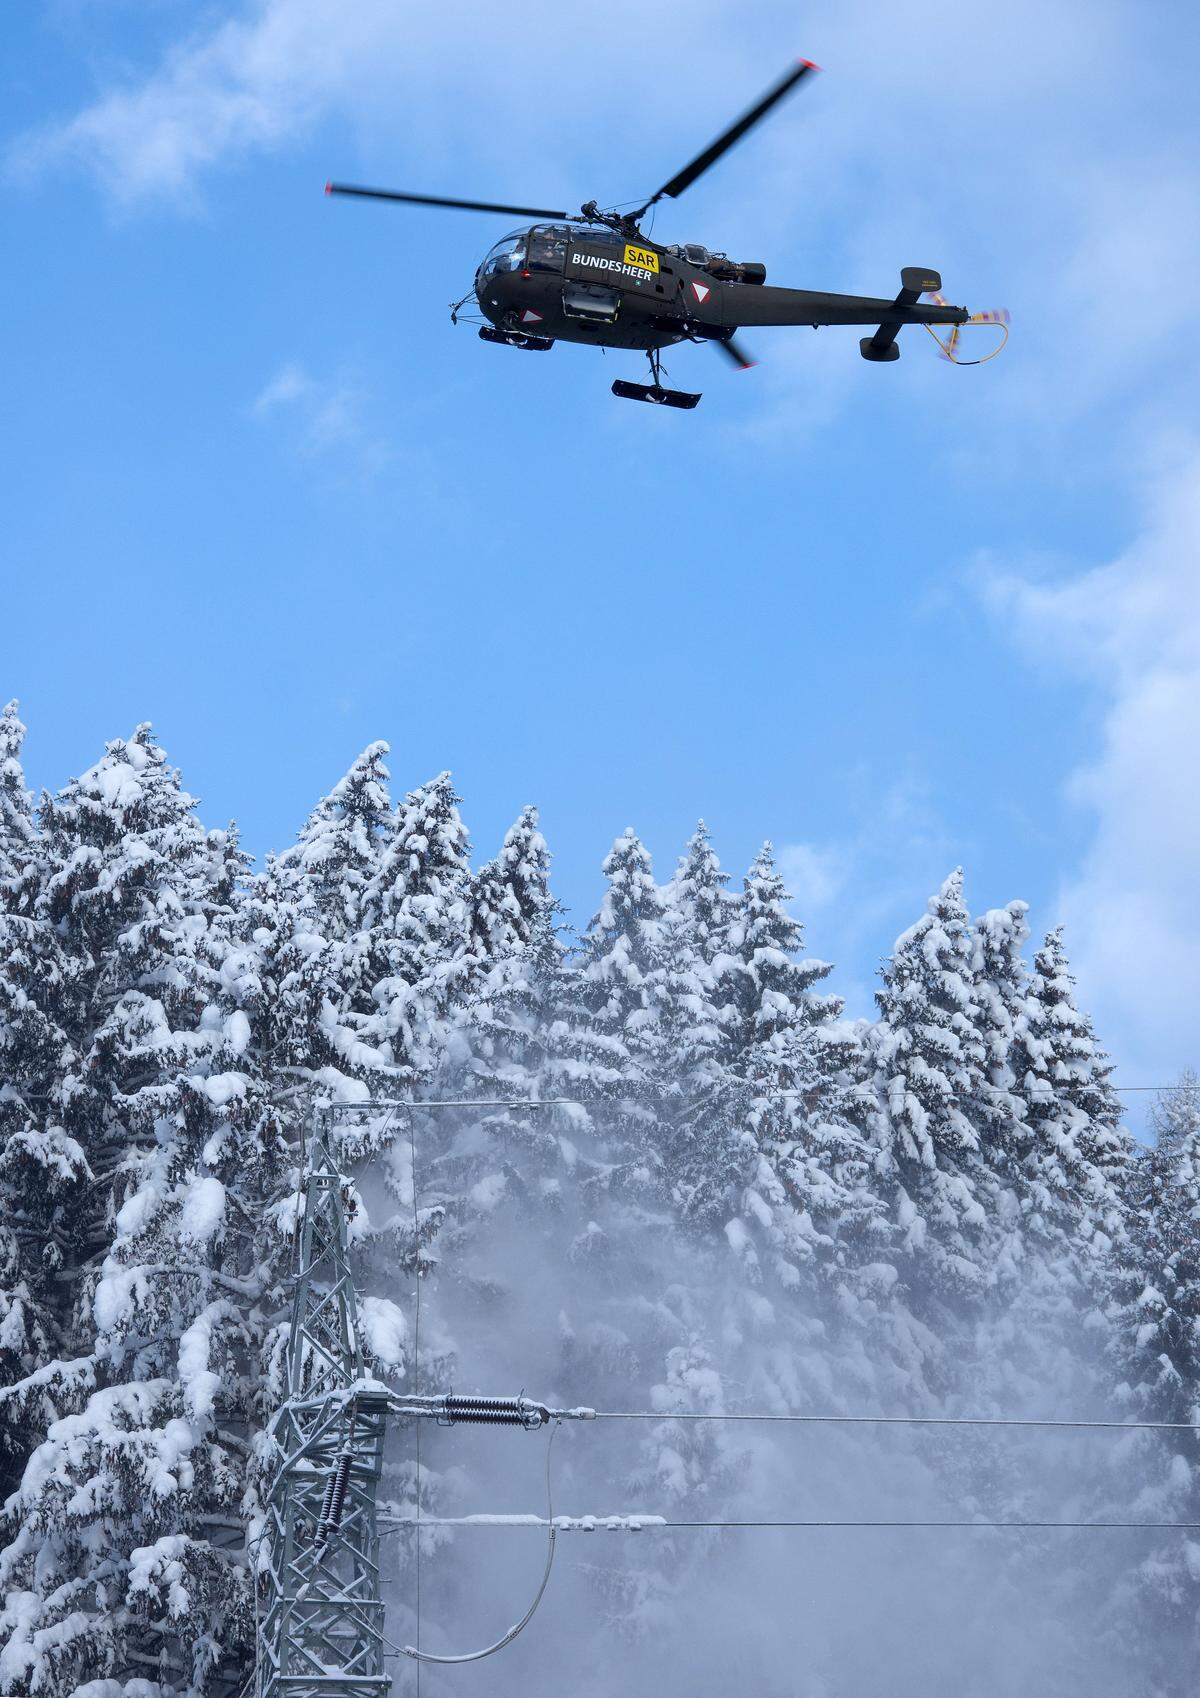 Ein Bundesheer-Hubschrauber am Freitag, 11. Jänner 2019, beim sog. 'Downwash' in Hall bei Admont. Hubschrauber sind im Einsatz, um aus der Luft Unterstützung zu leisten und Schnee von den Bäumen zu entfernen.